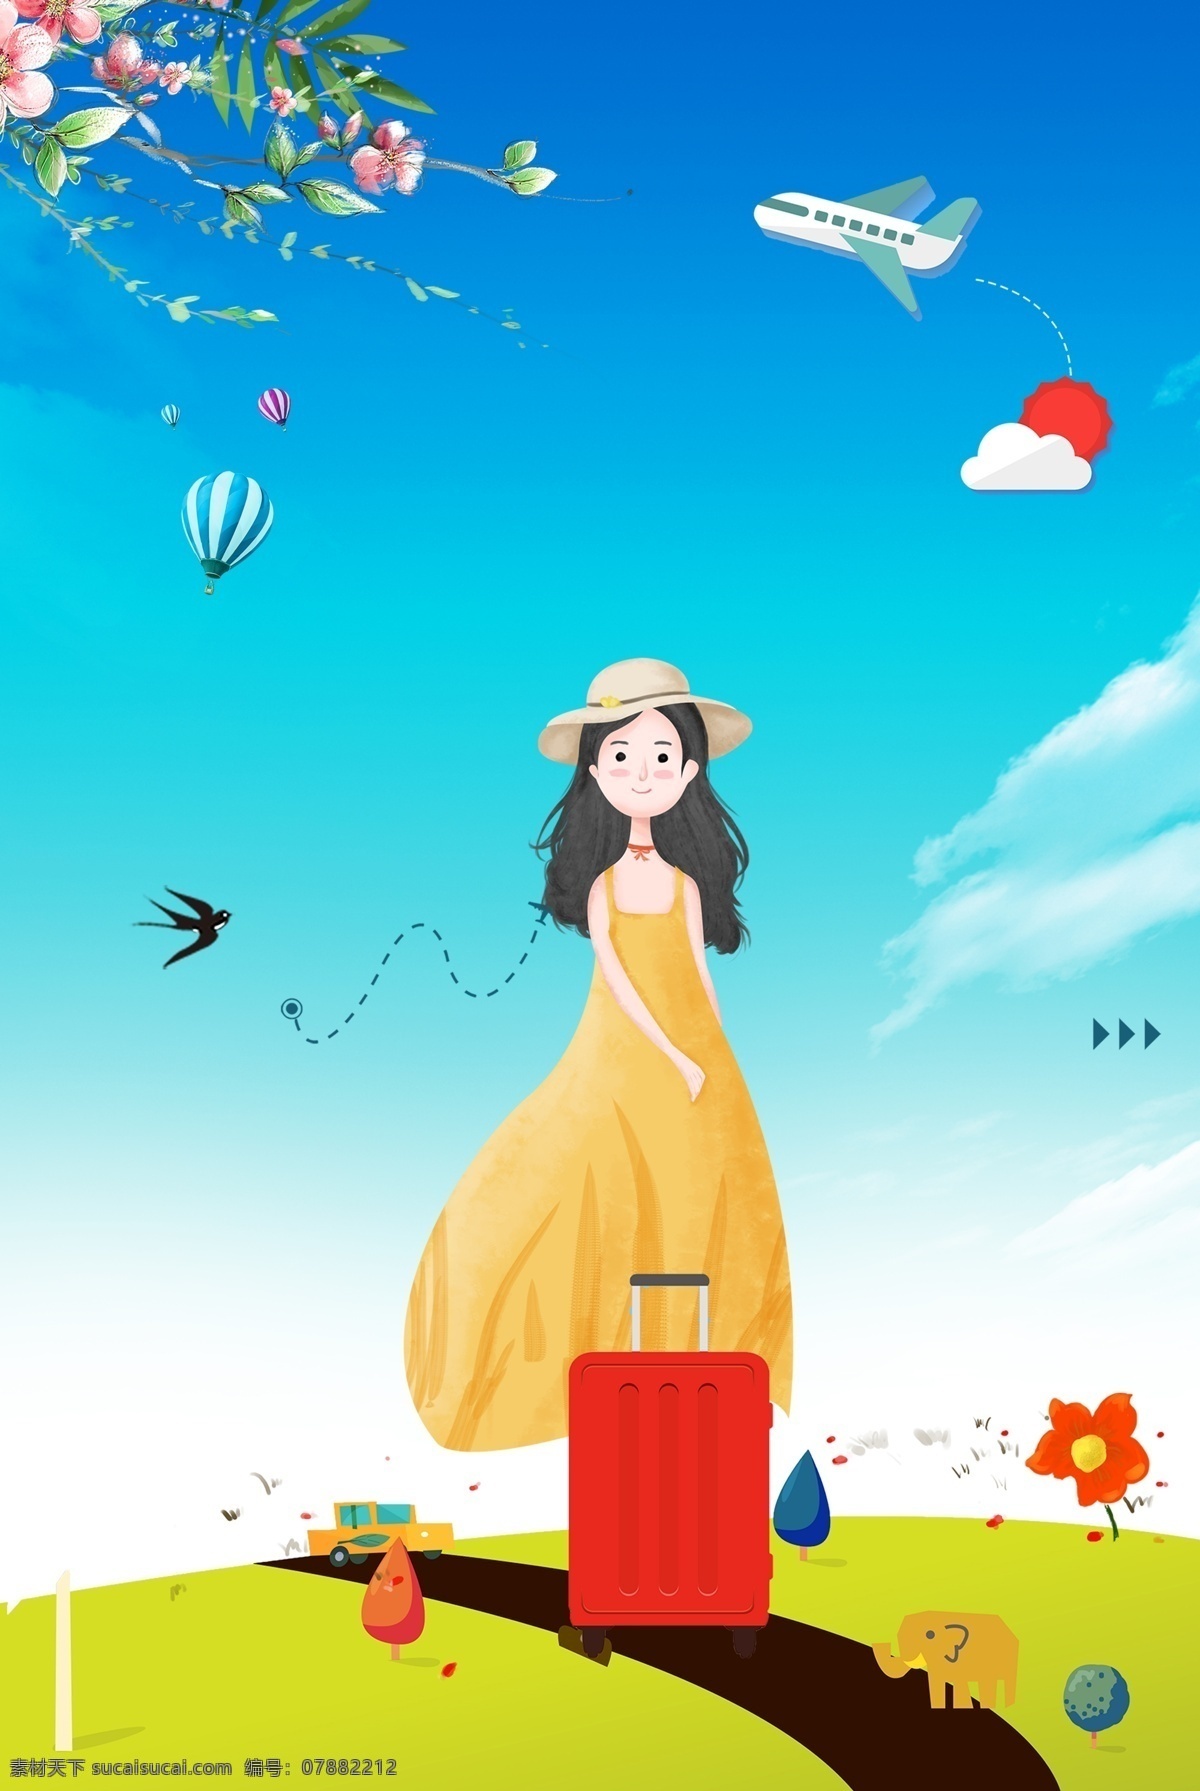 暑期 清新 之旅 海报 旅行 唯美 女孩 行李箱 蓝天 白云 飞机 太阳 枝叶 花卉